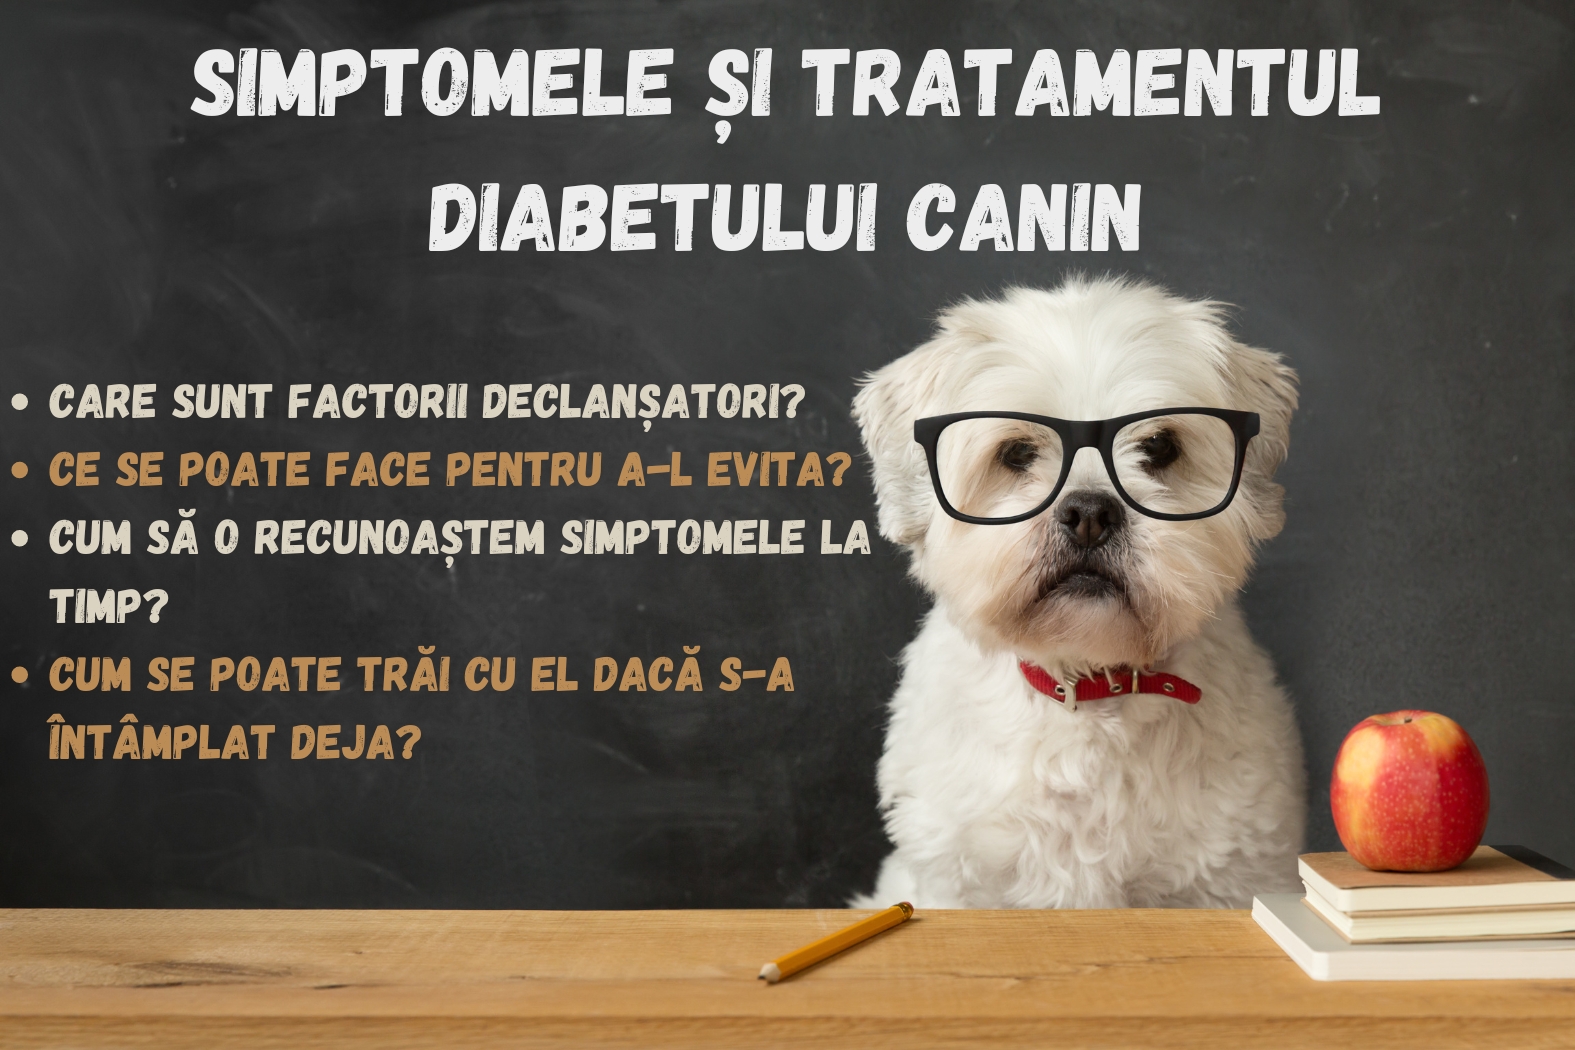 Simptomele și tratamentul diabetului canin